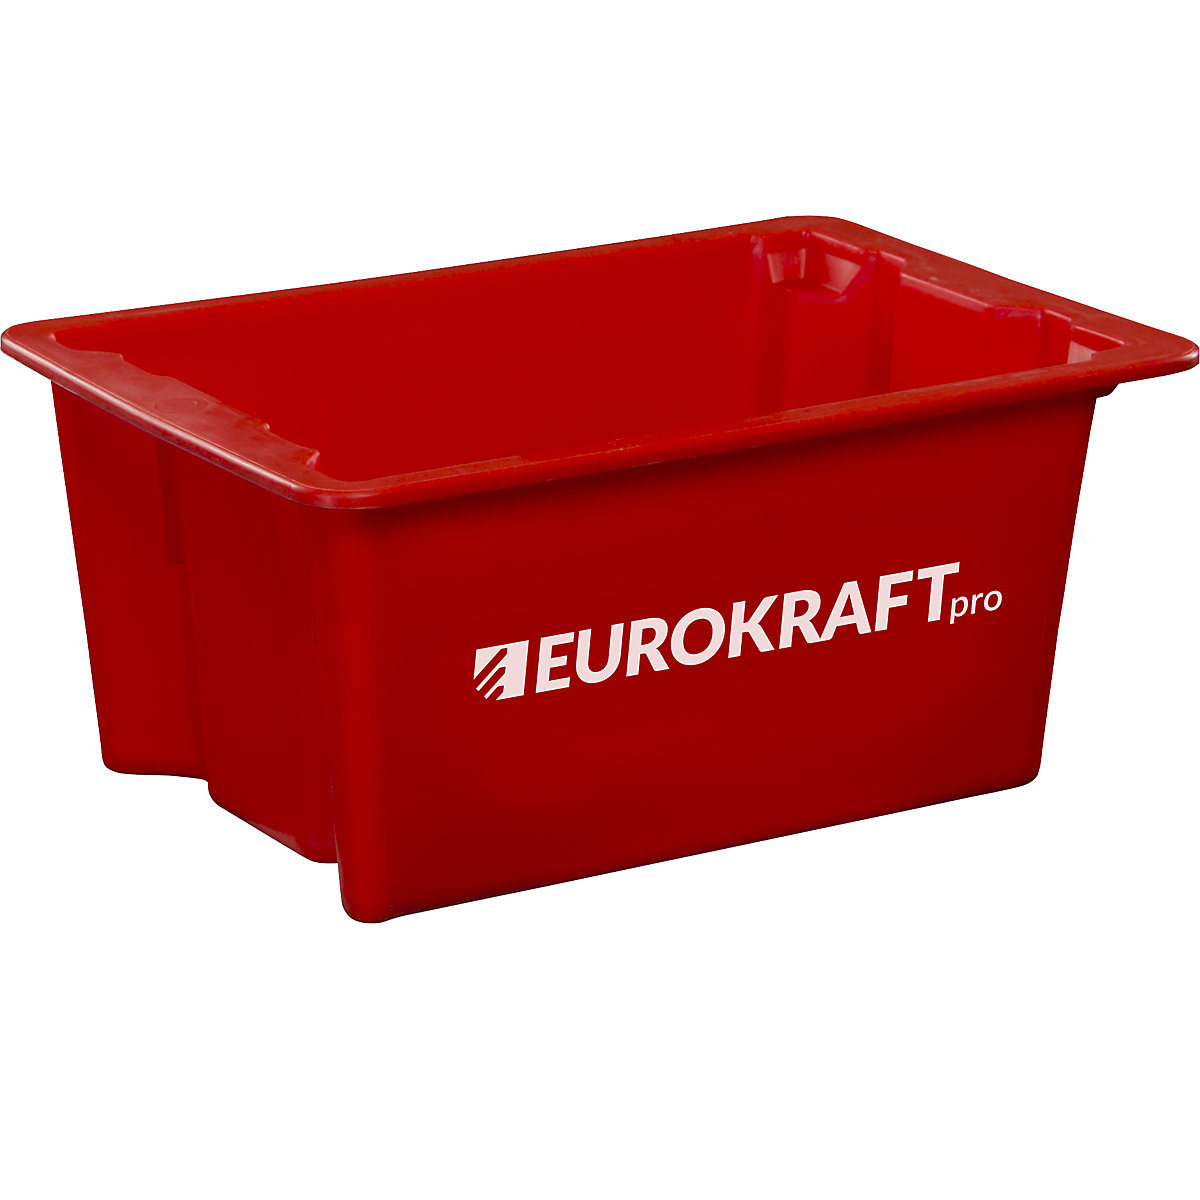 EUROKRAFTpro – Otočná stohovací nádoba z polypropylenu vhodného pro potraviny, obsah 6 litrů, bal.j. 4 ks, stěny a dno plné, červená